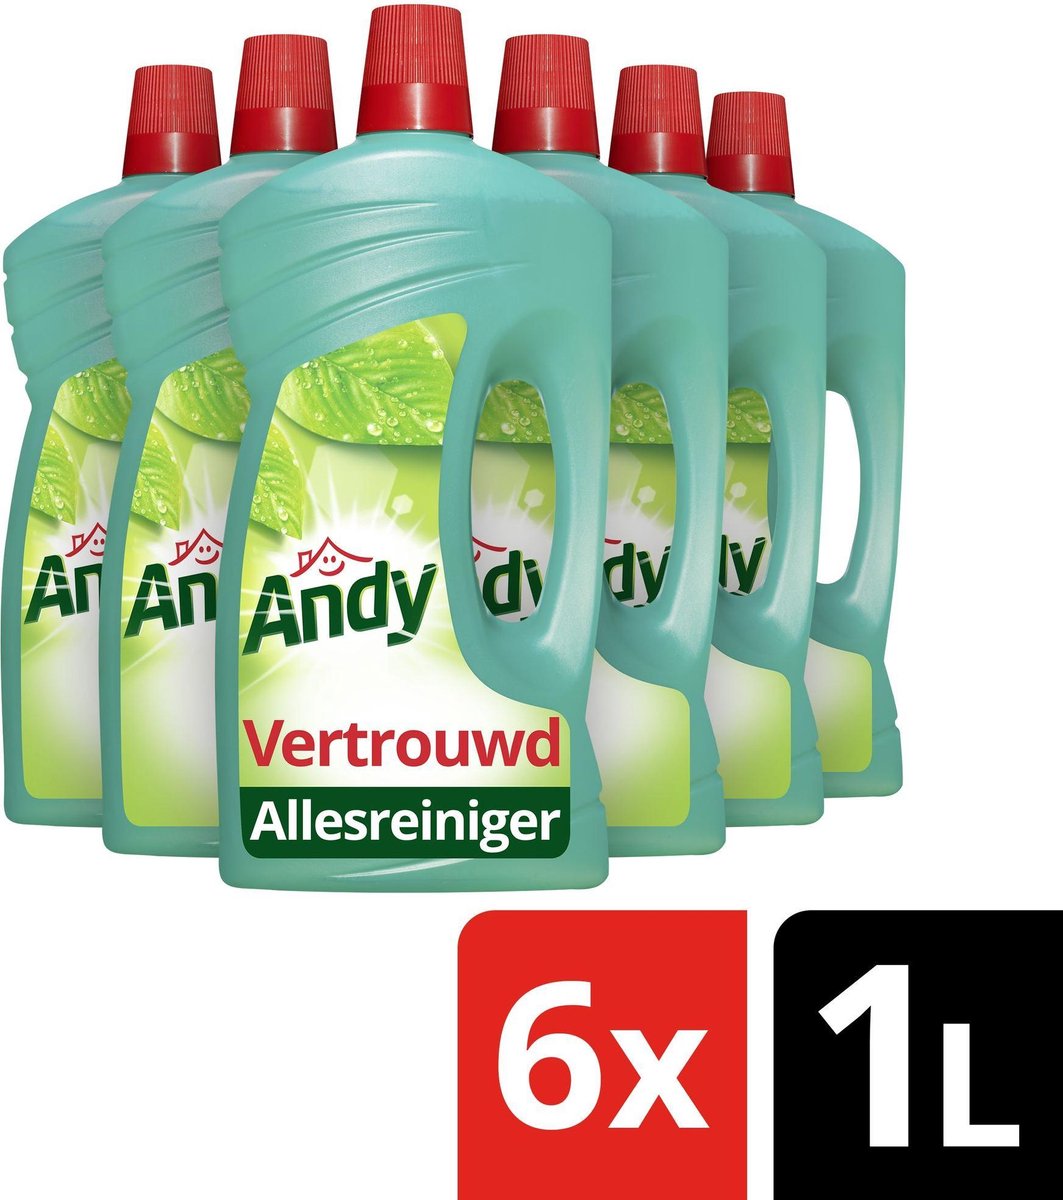 Andy Vertrouwd Allesreiniger - 6 x 1 liter - Voordeelverpakking | bol.com